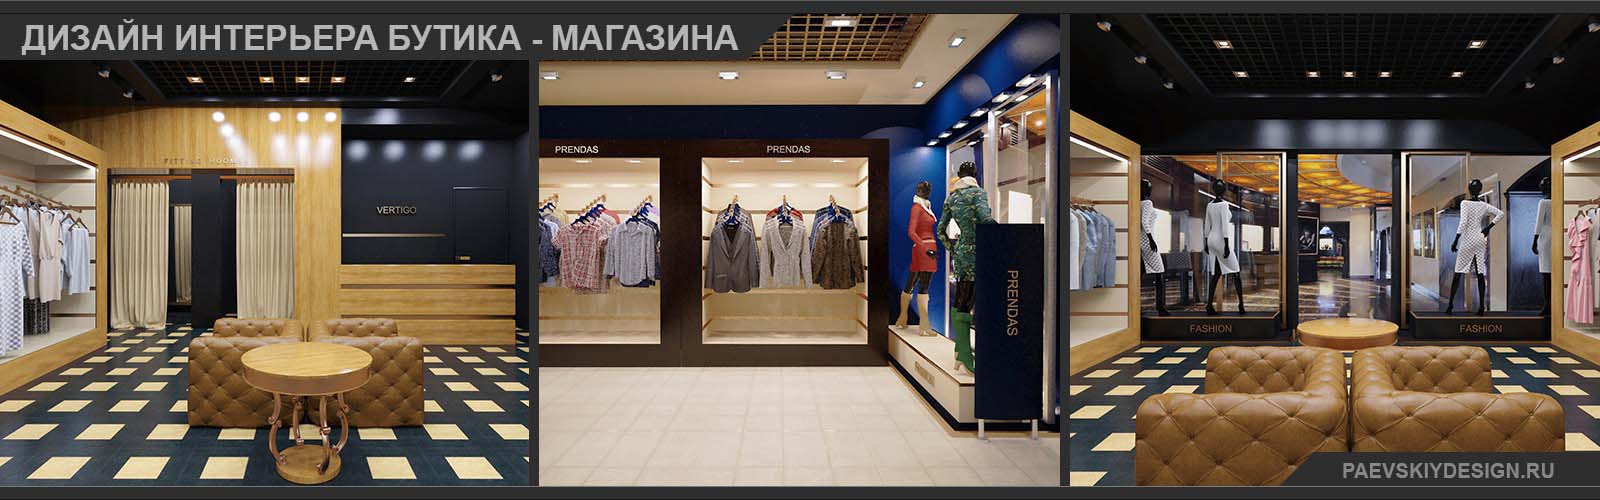 Дизайн интерьера магазина бутика в Москве